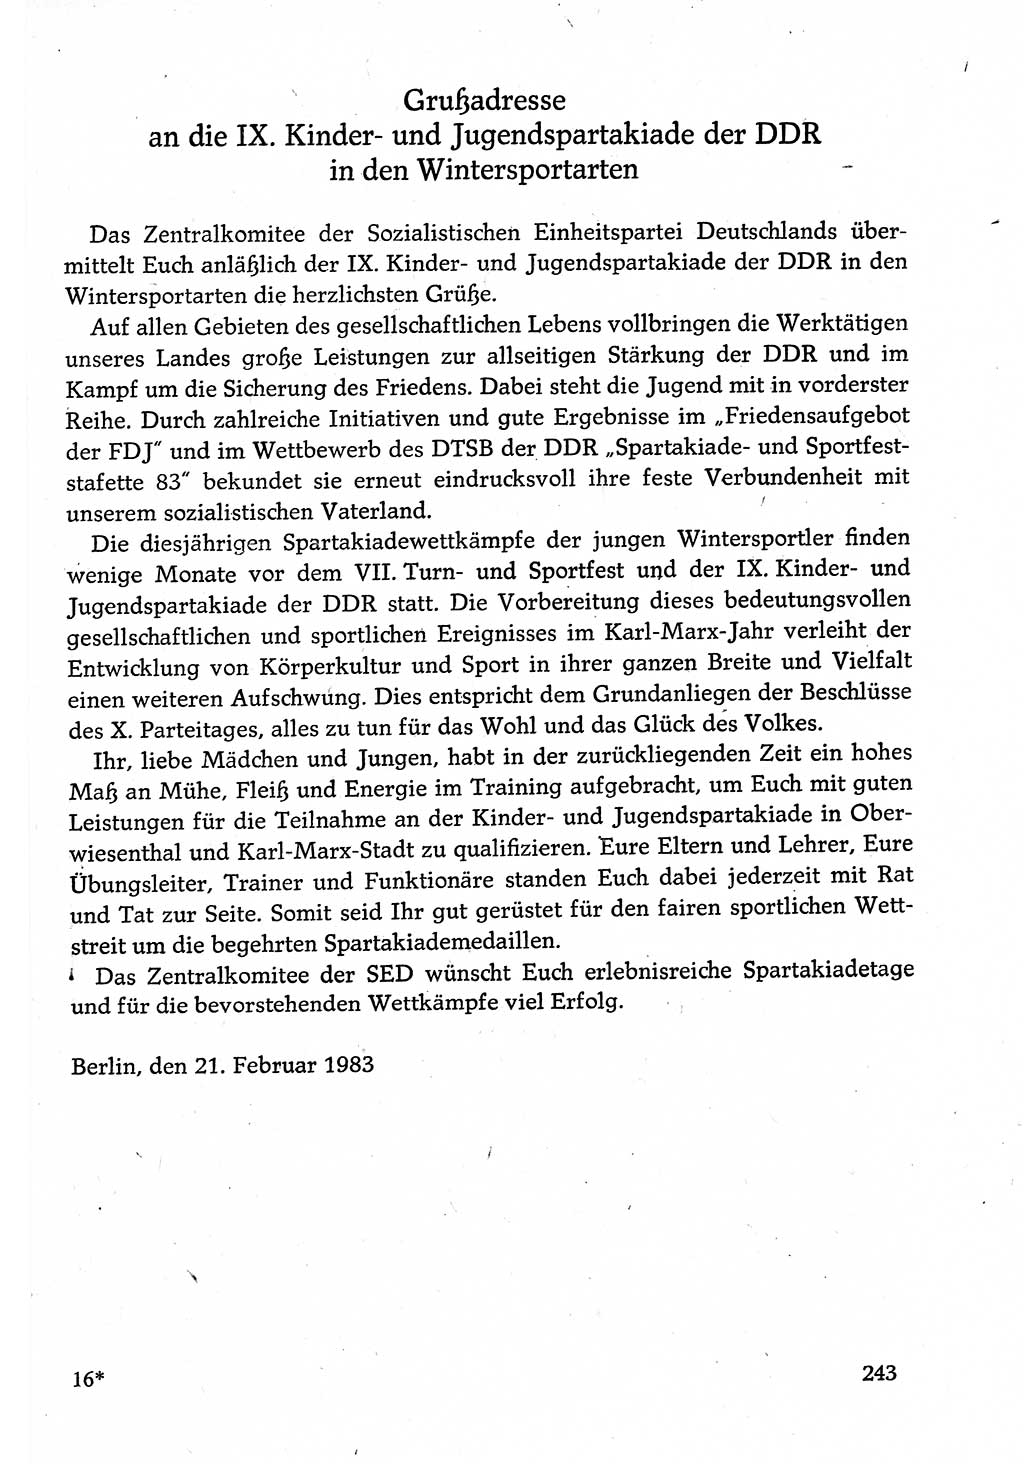 Dokumente der Sozialistischen Einheitspartei Deutschlands (SED) [Deutsche Demokratische Republik (DDR)] 1982-1983, Seite 243 (Dok. SED DDR 1982-1983, S. 243)